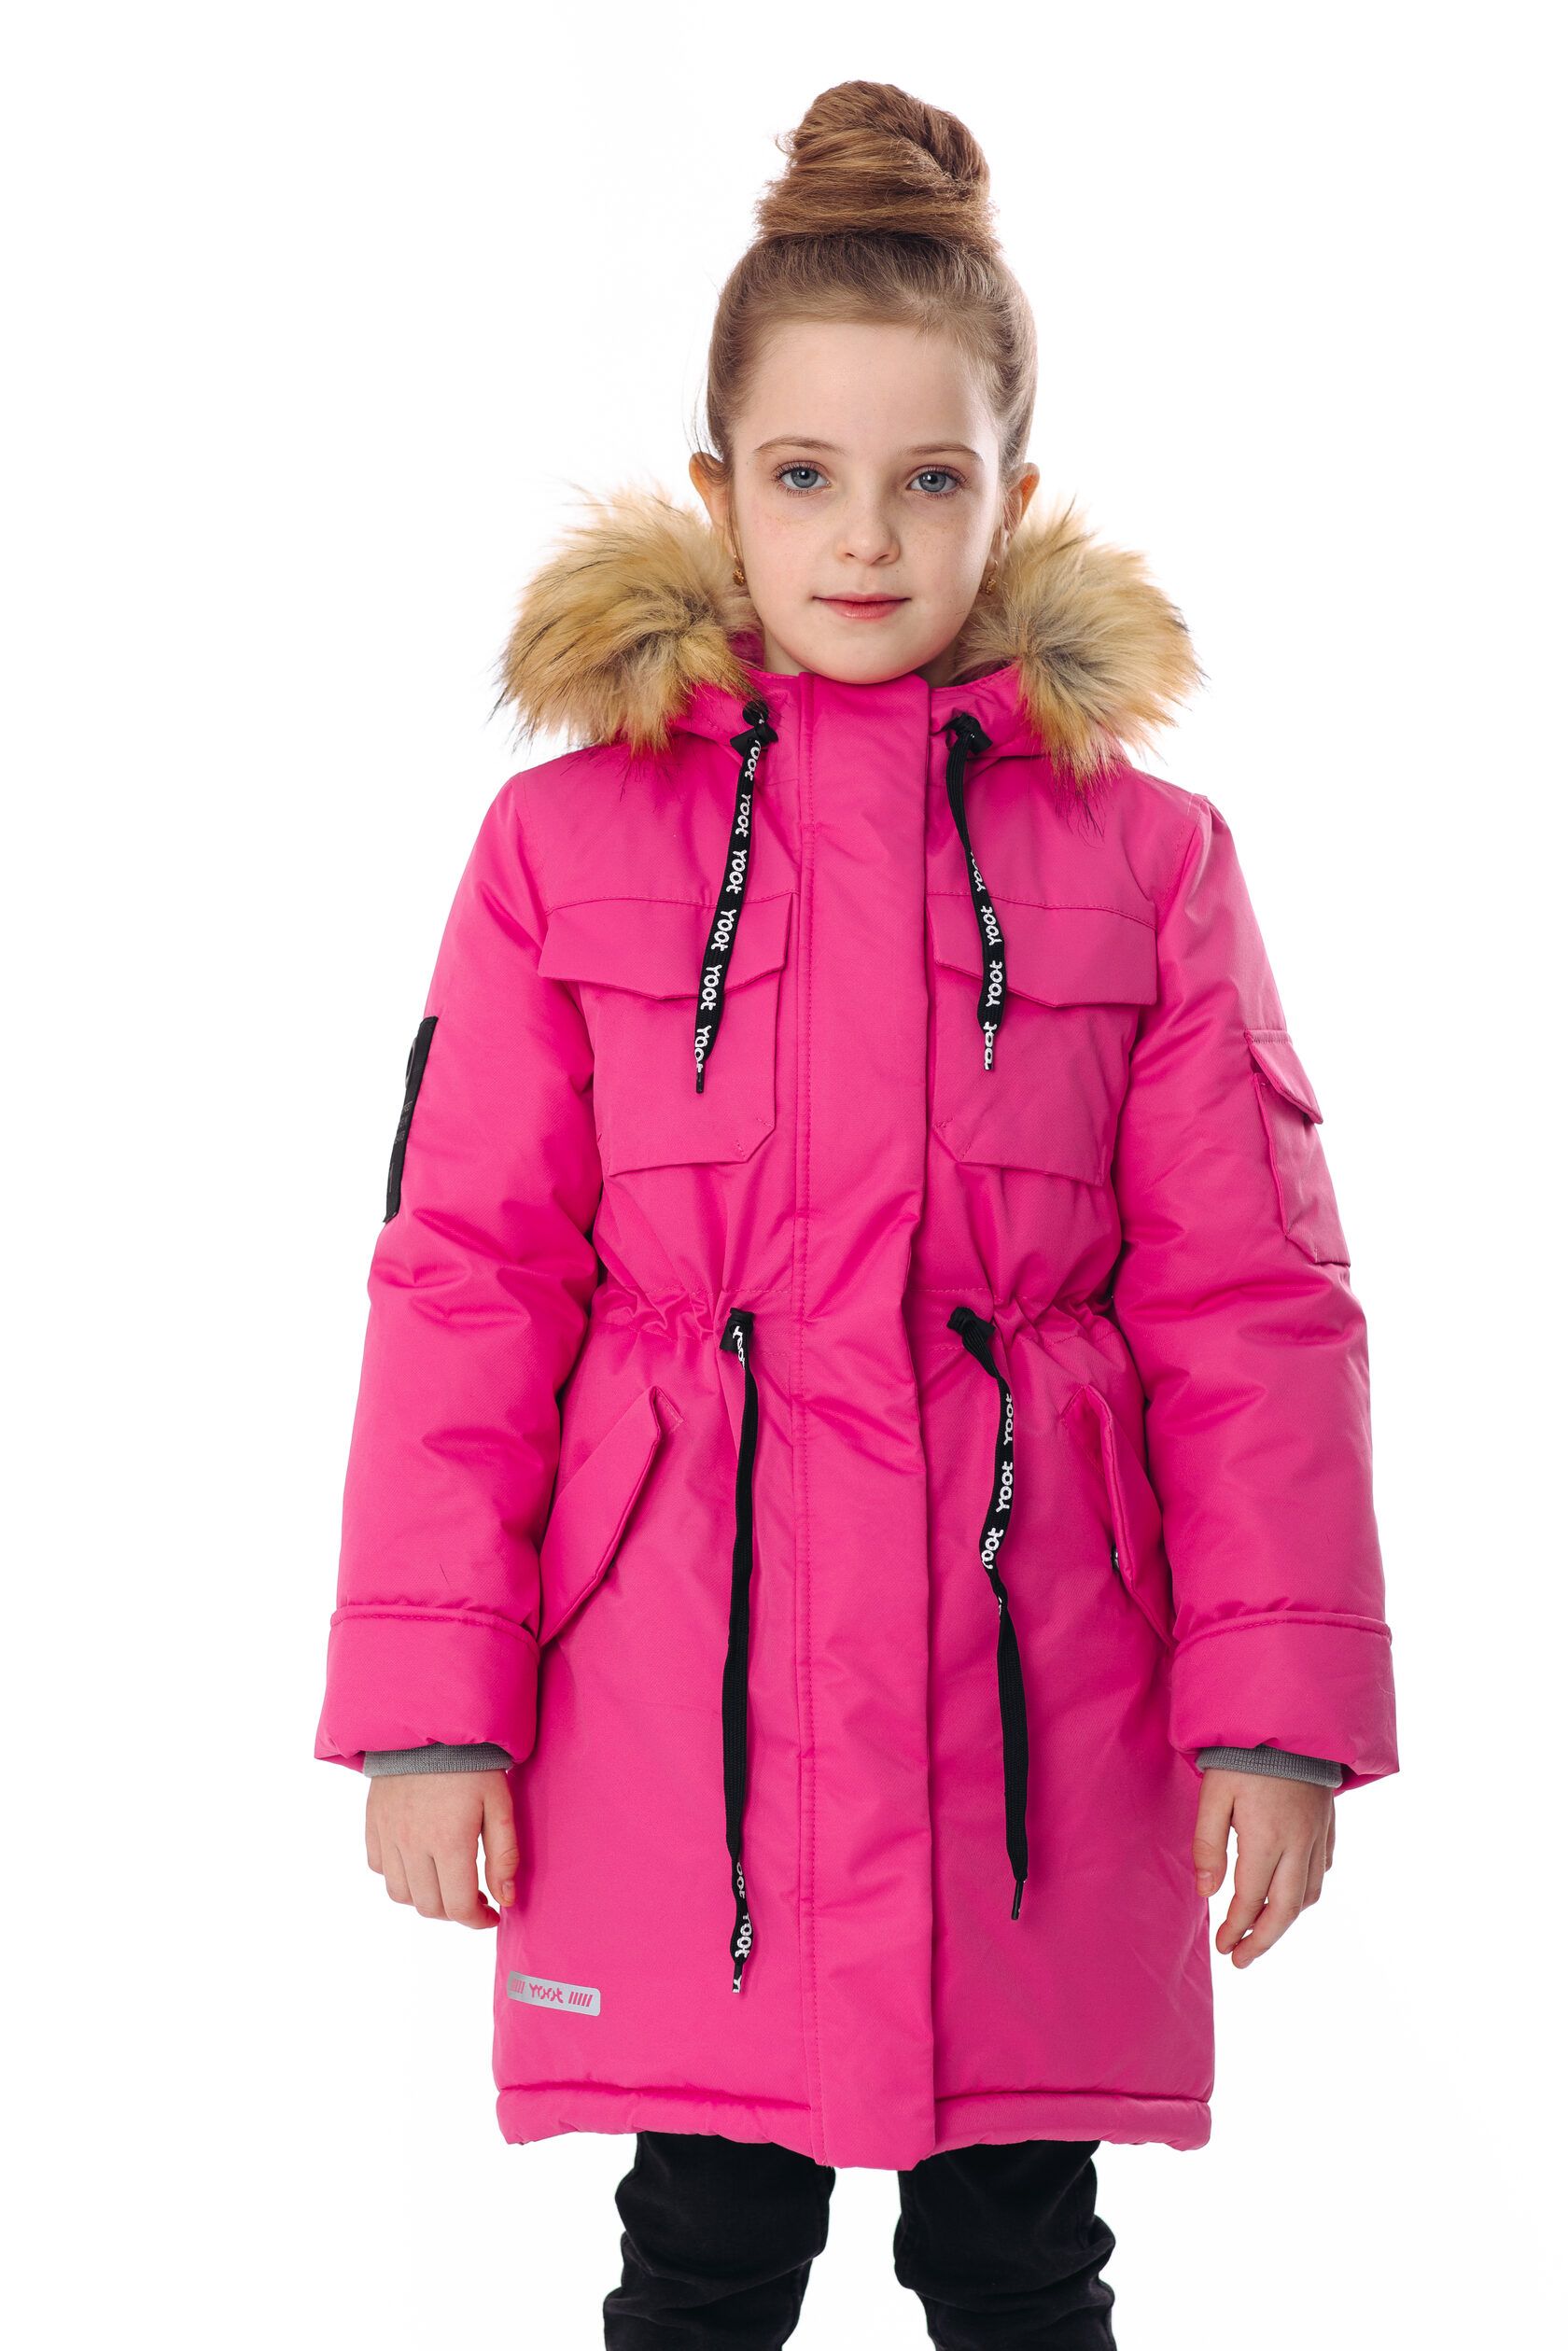 Пальто детское Yoot 2211, розовый, 116